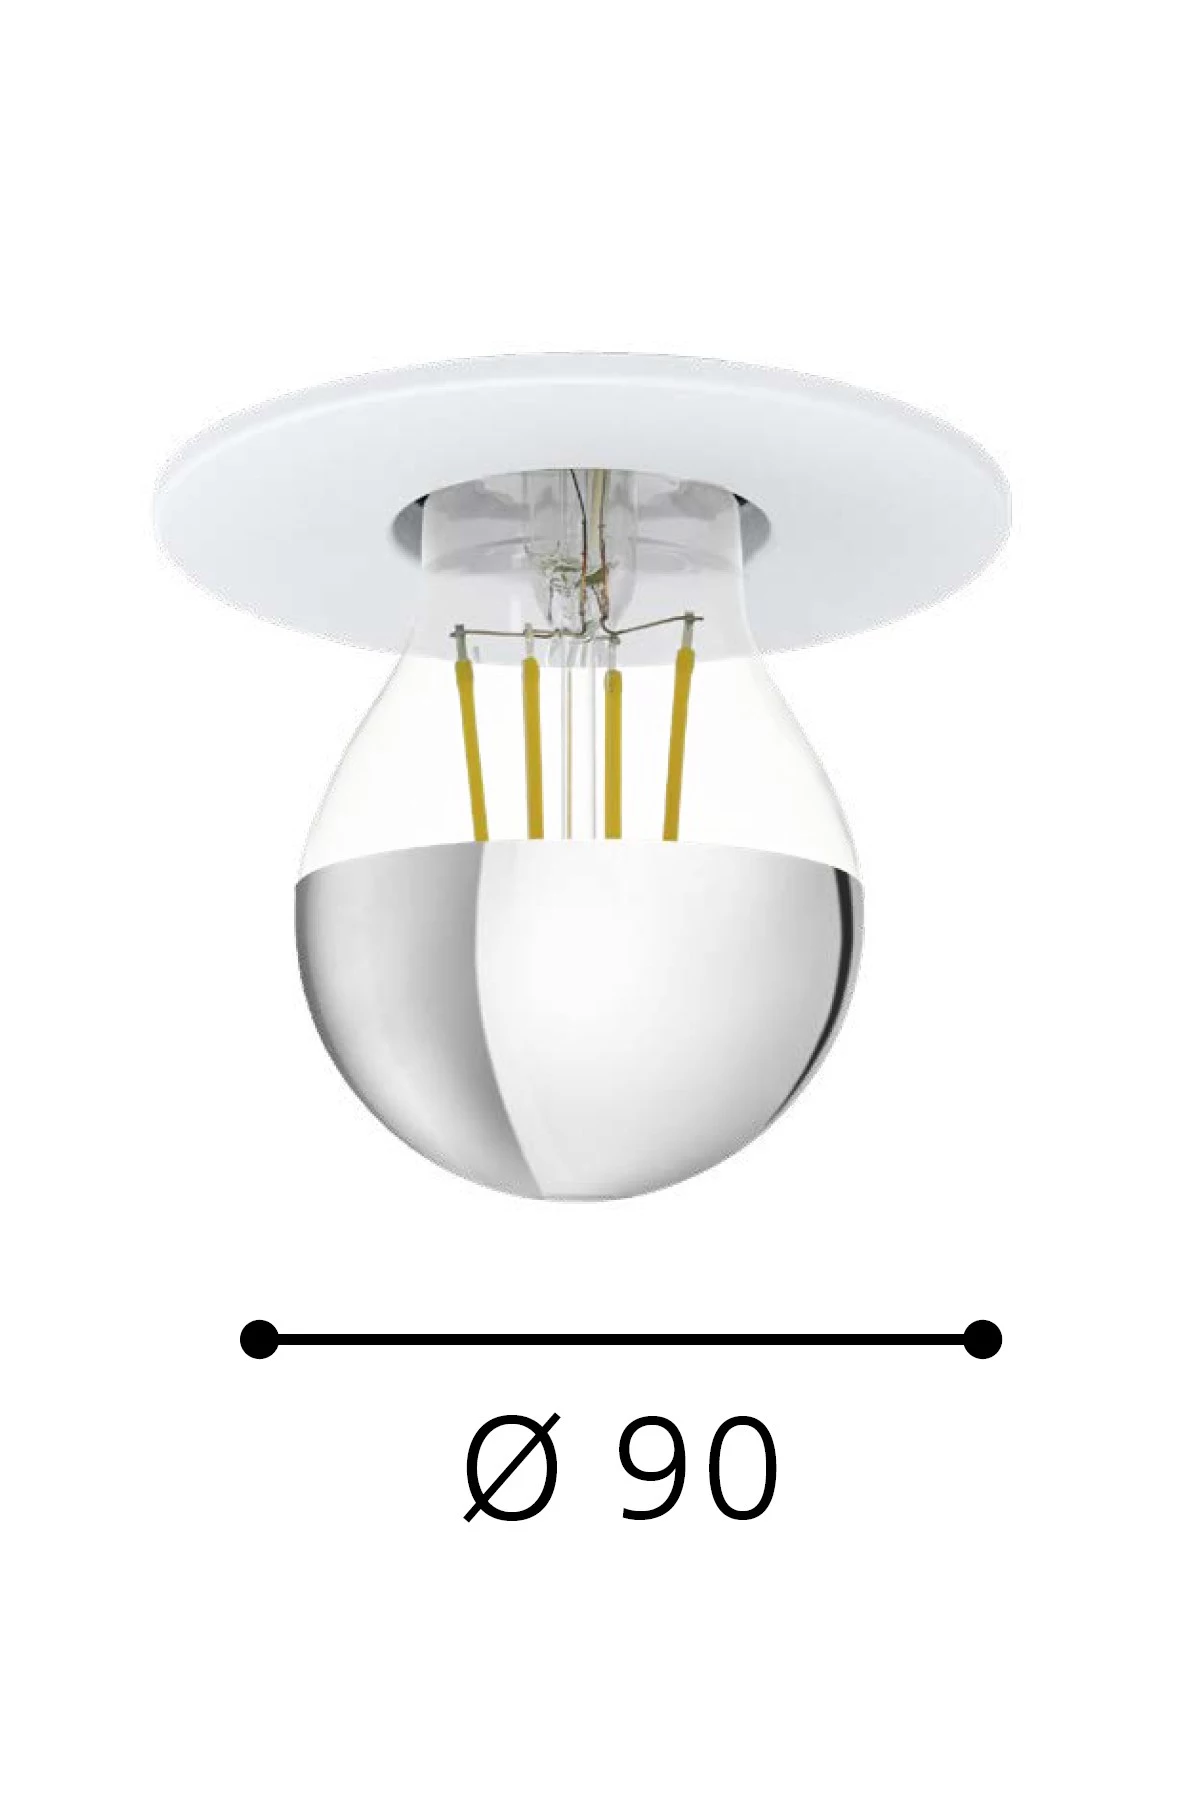   
                        Точковий світильник EGLO (Австрія) 31447    
                         у стилі хай-тек.  
                        Тип джерела світла: cвітлодіодні led, енергозберігаючі, розжарювання.                         Форма: коло.                                                                          фото 2